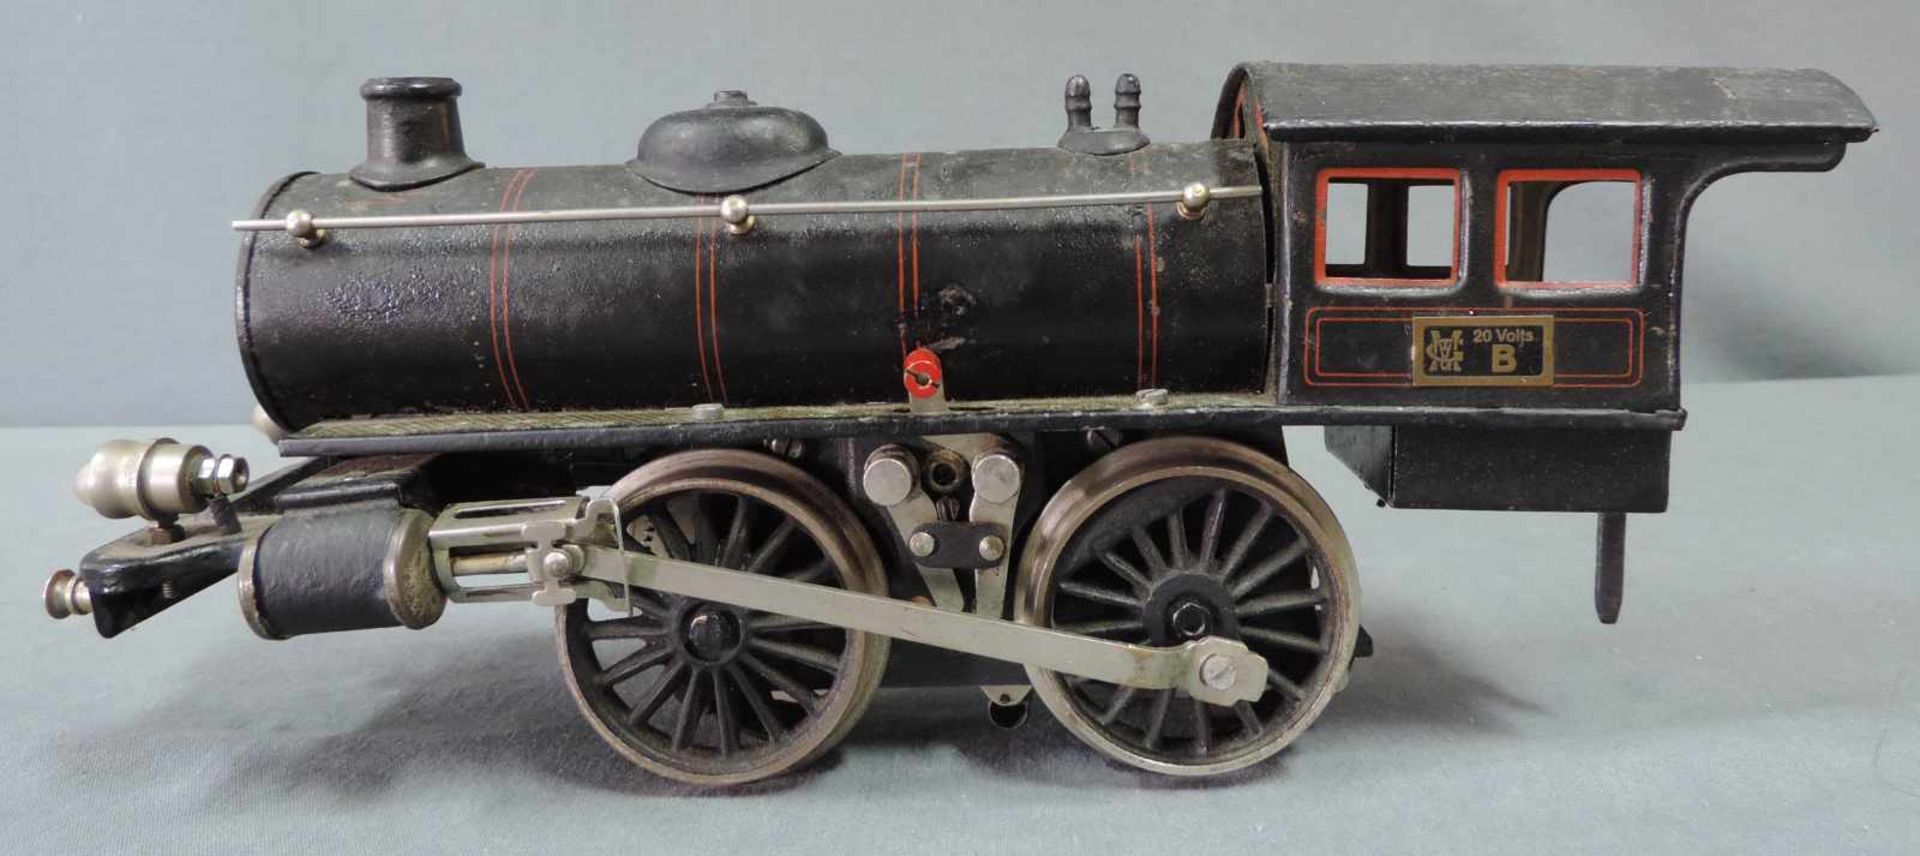 Modell Lokomotive. Märklin. "R 13041" Spur 1 27 cm x 10 cm. Modell Dampflock "R 13041" von Märklin - Bild 3 aus 8